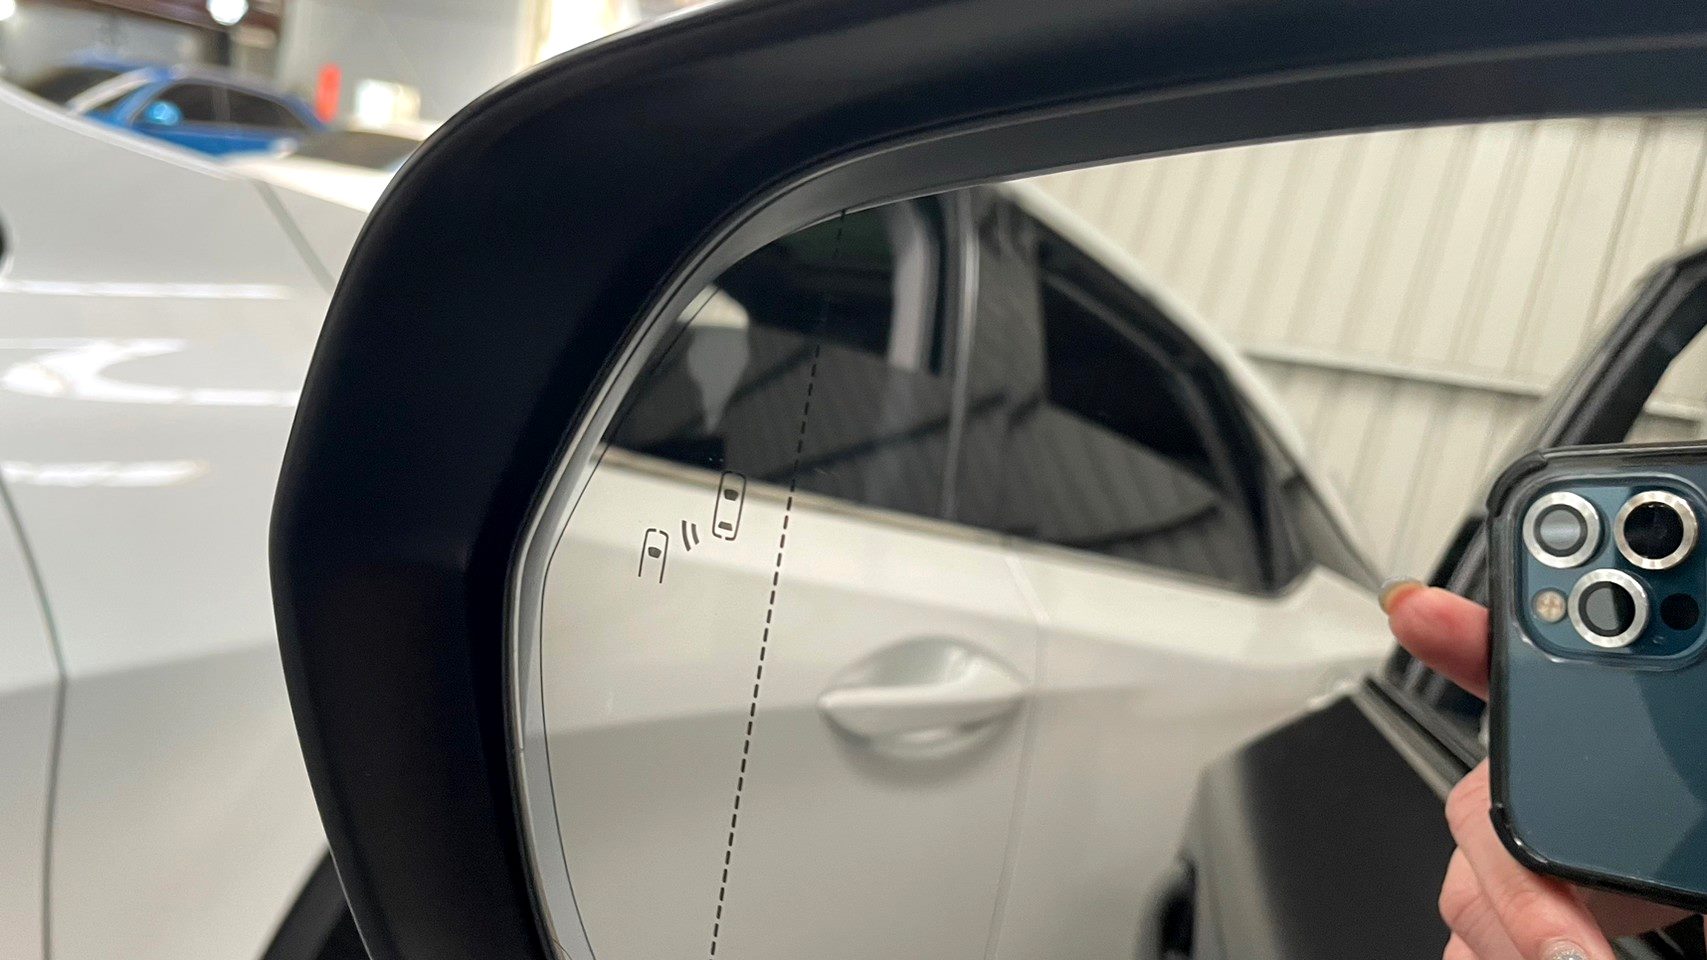 2019 LEXUS NX300 (NX200T)  F-Sport AWD 最高階等級 有全景天窗 HUD抬顯  第9張相片